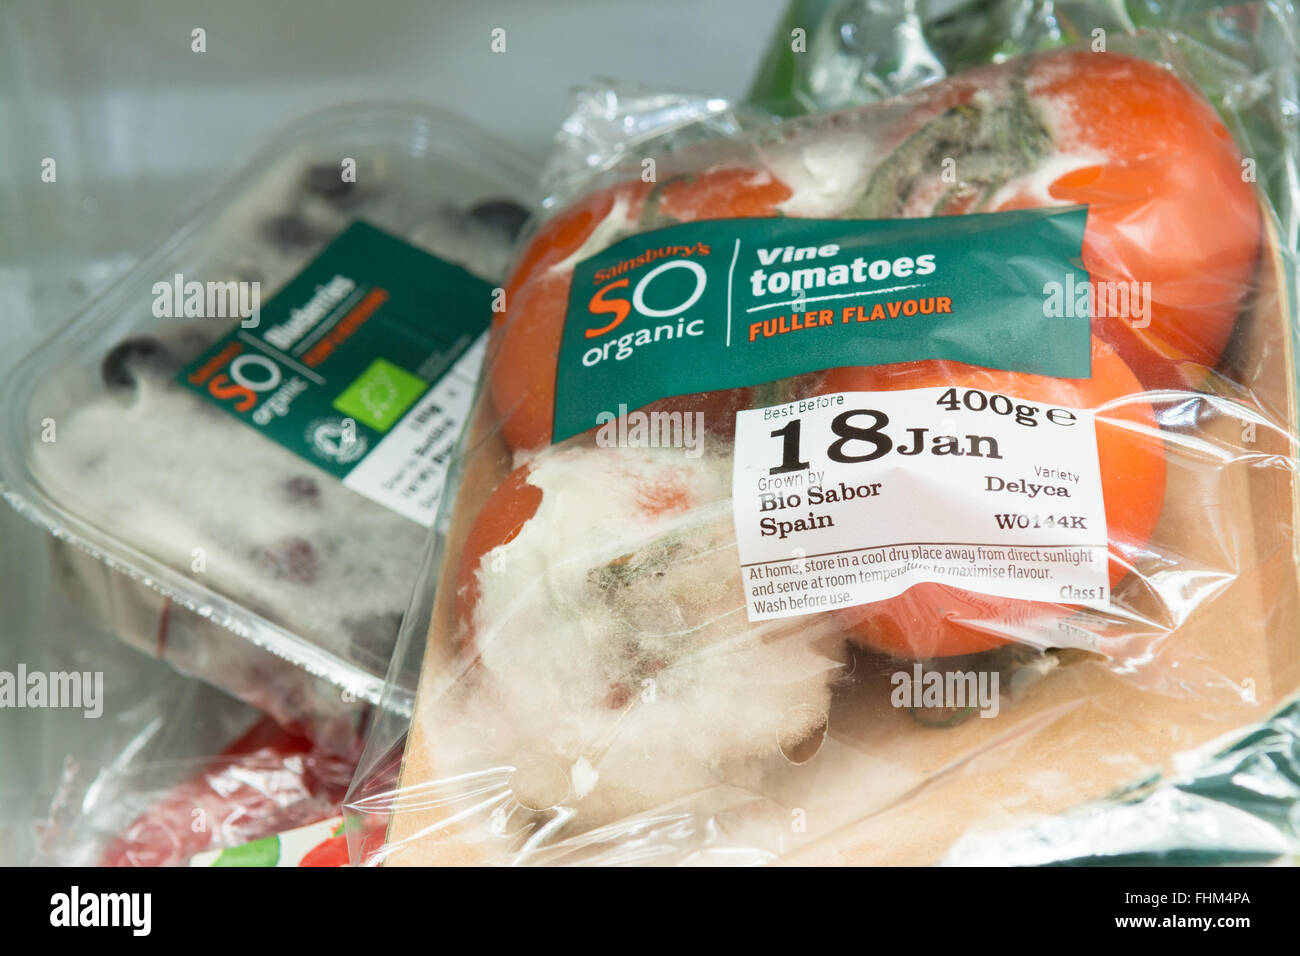 Al di fuori del data organico cibo fresco in frigo Foto Stock